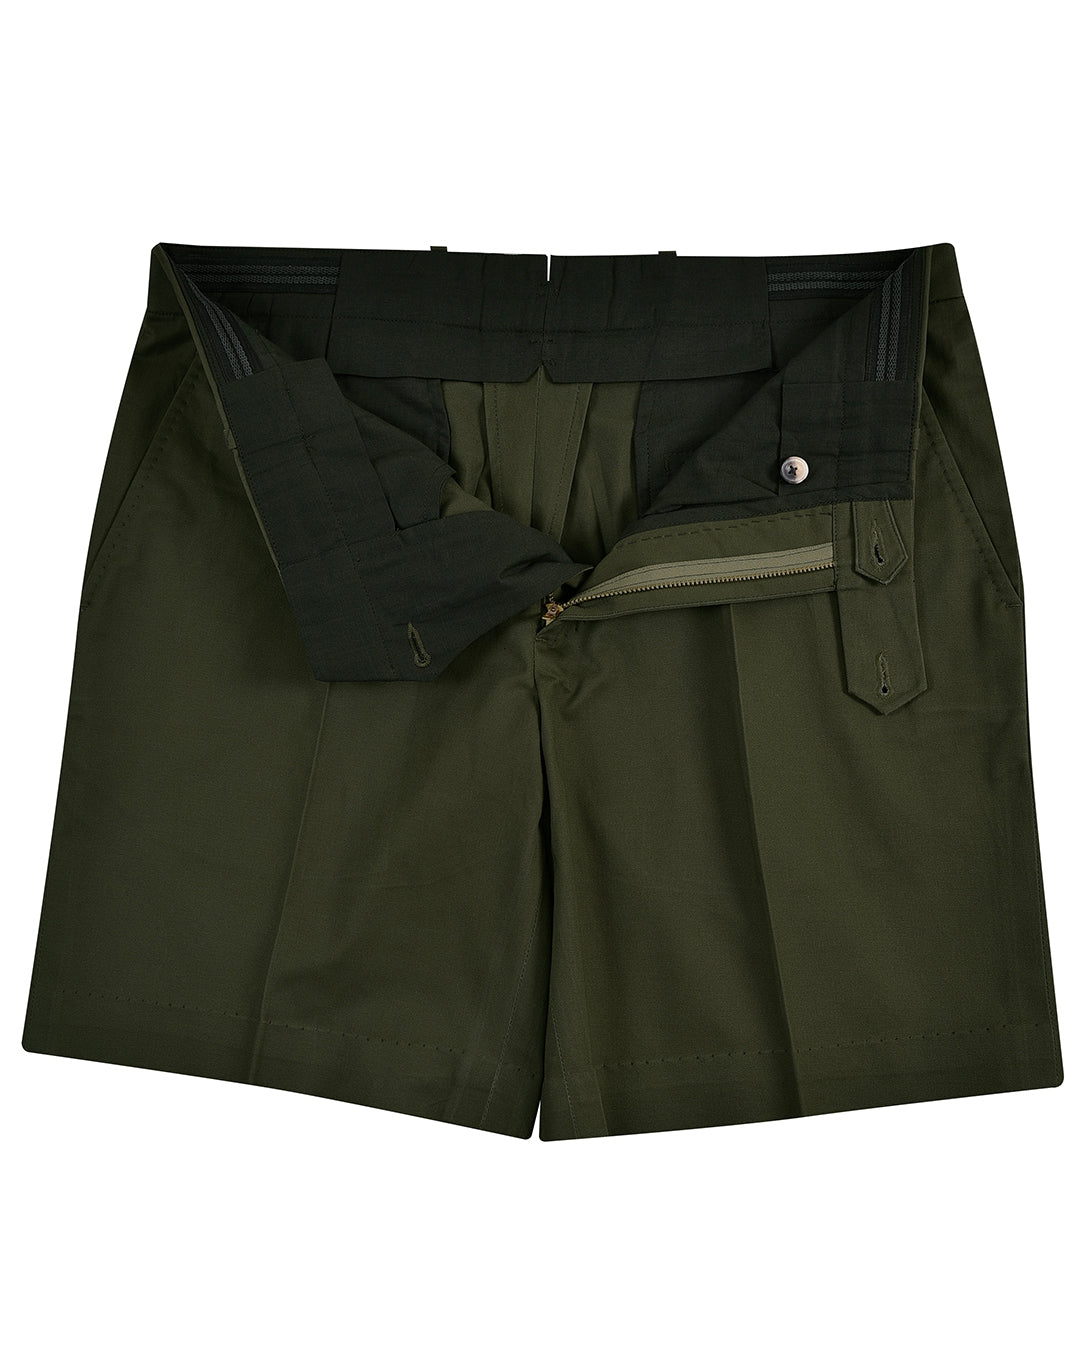 Genoa Chino: Olive Green Shorts